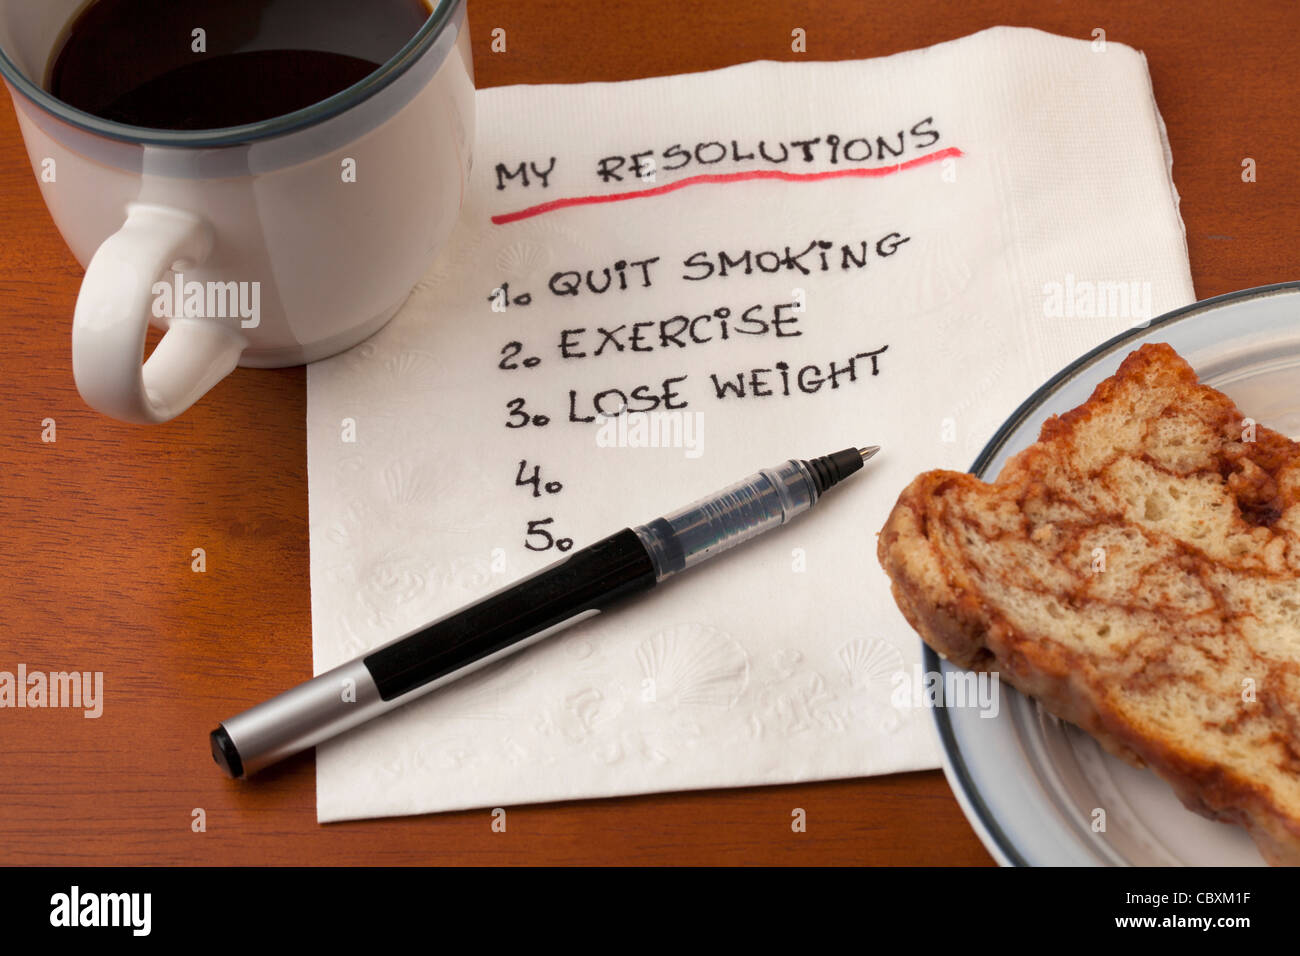 meine Liste Auflösung (Rauchen, Bewegung, Gewicht zu verlieren) Handschrift auf weiße Serviette mit Kaffeetasse und Kuchen am Tisch Stockfoto